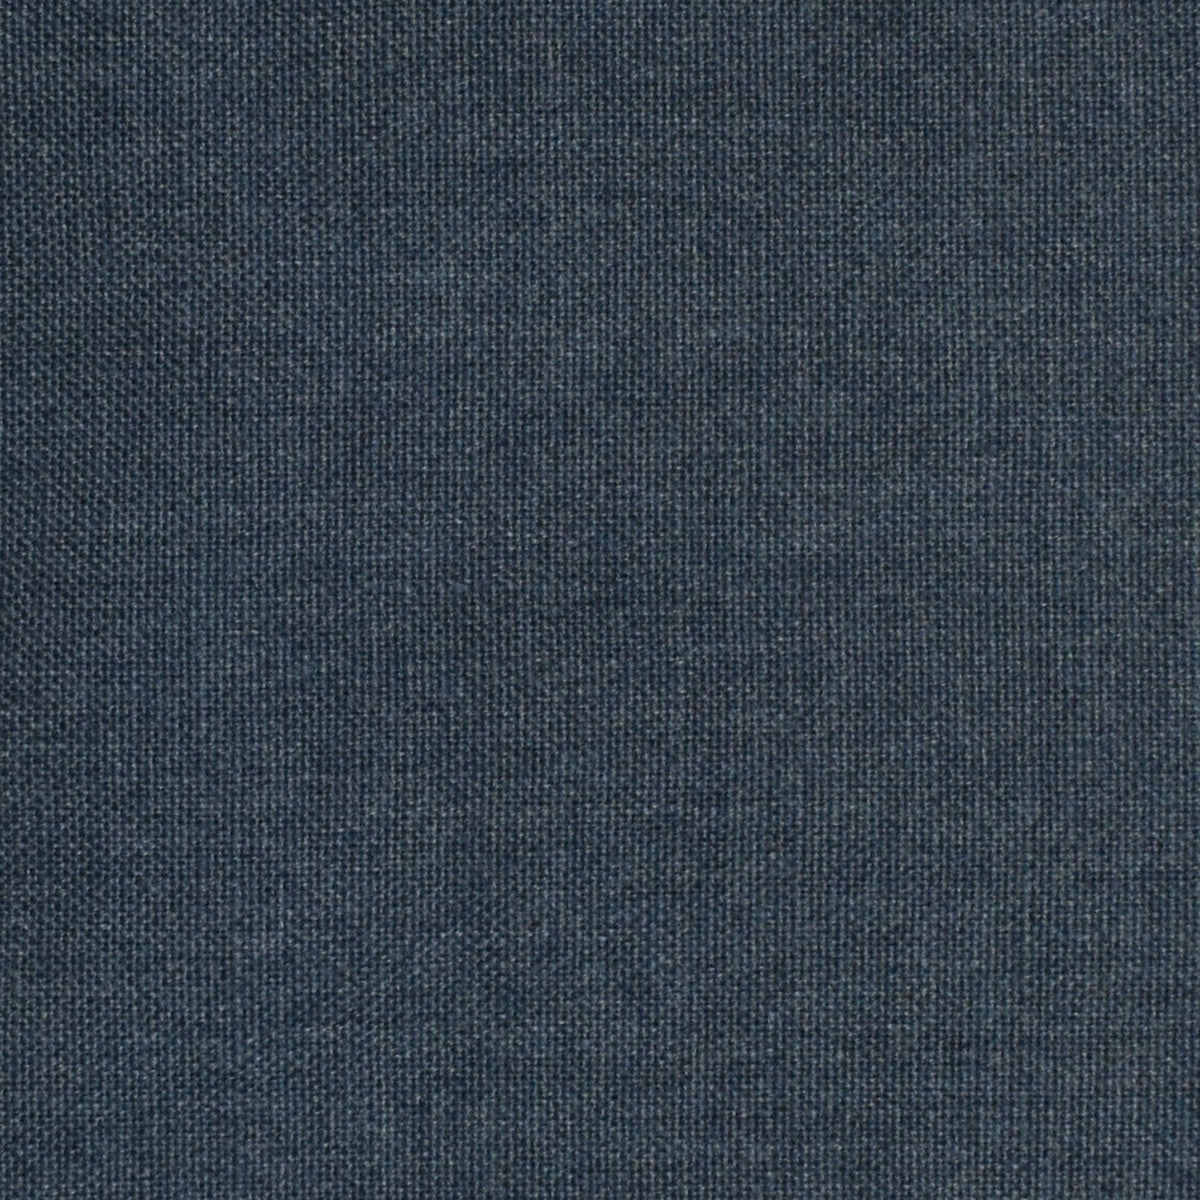 Les Halles S4012 Blue - Atlanta Fabrics